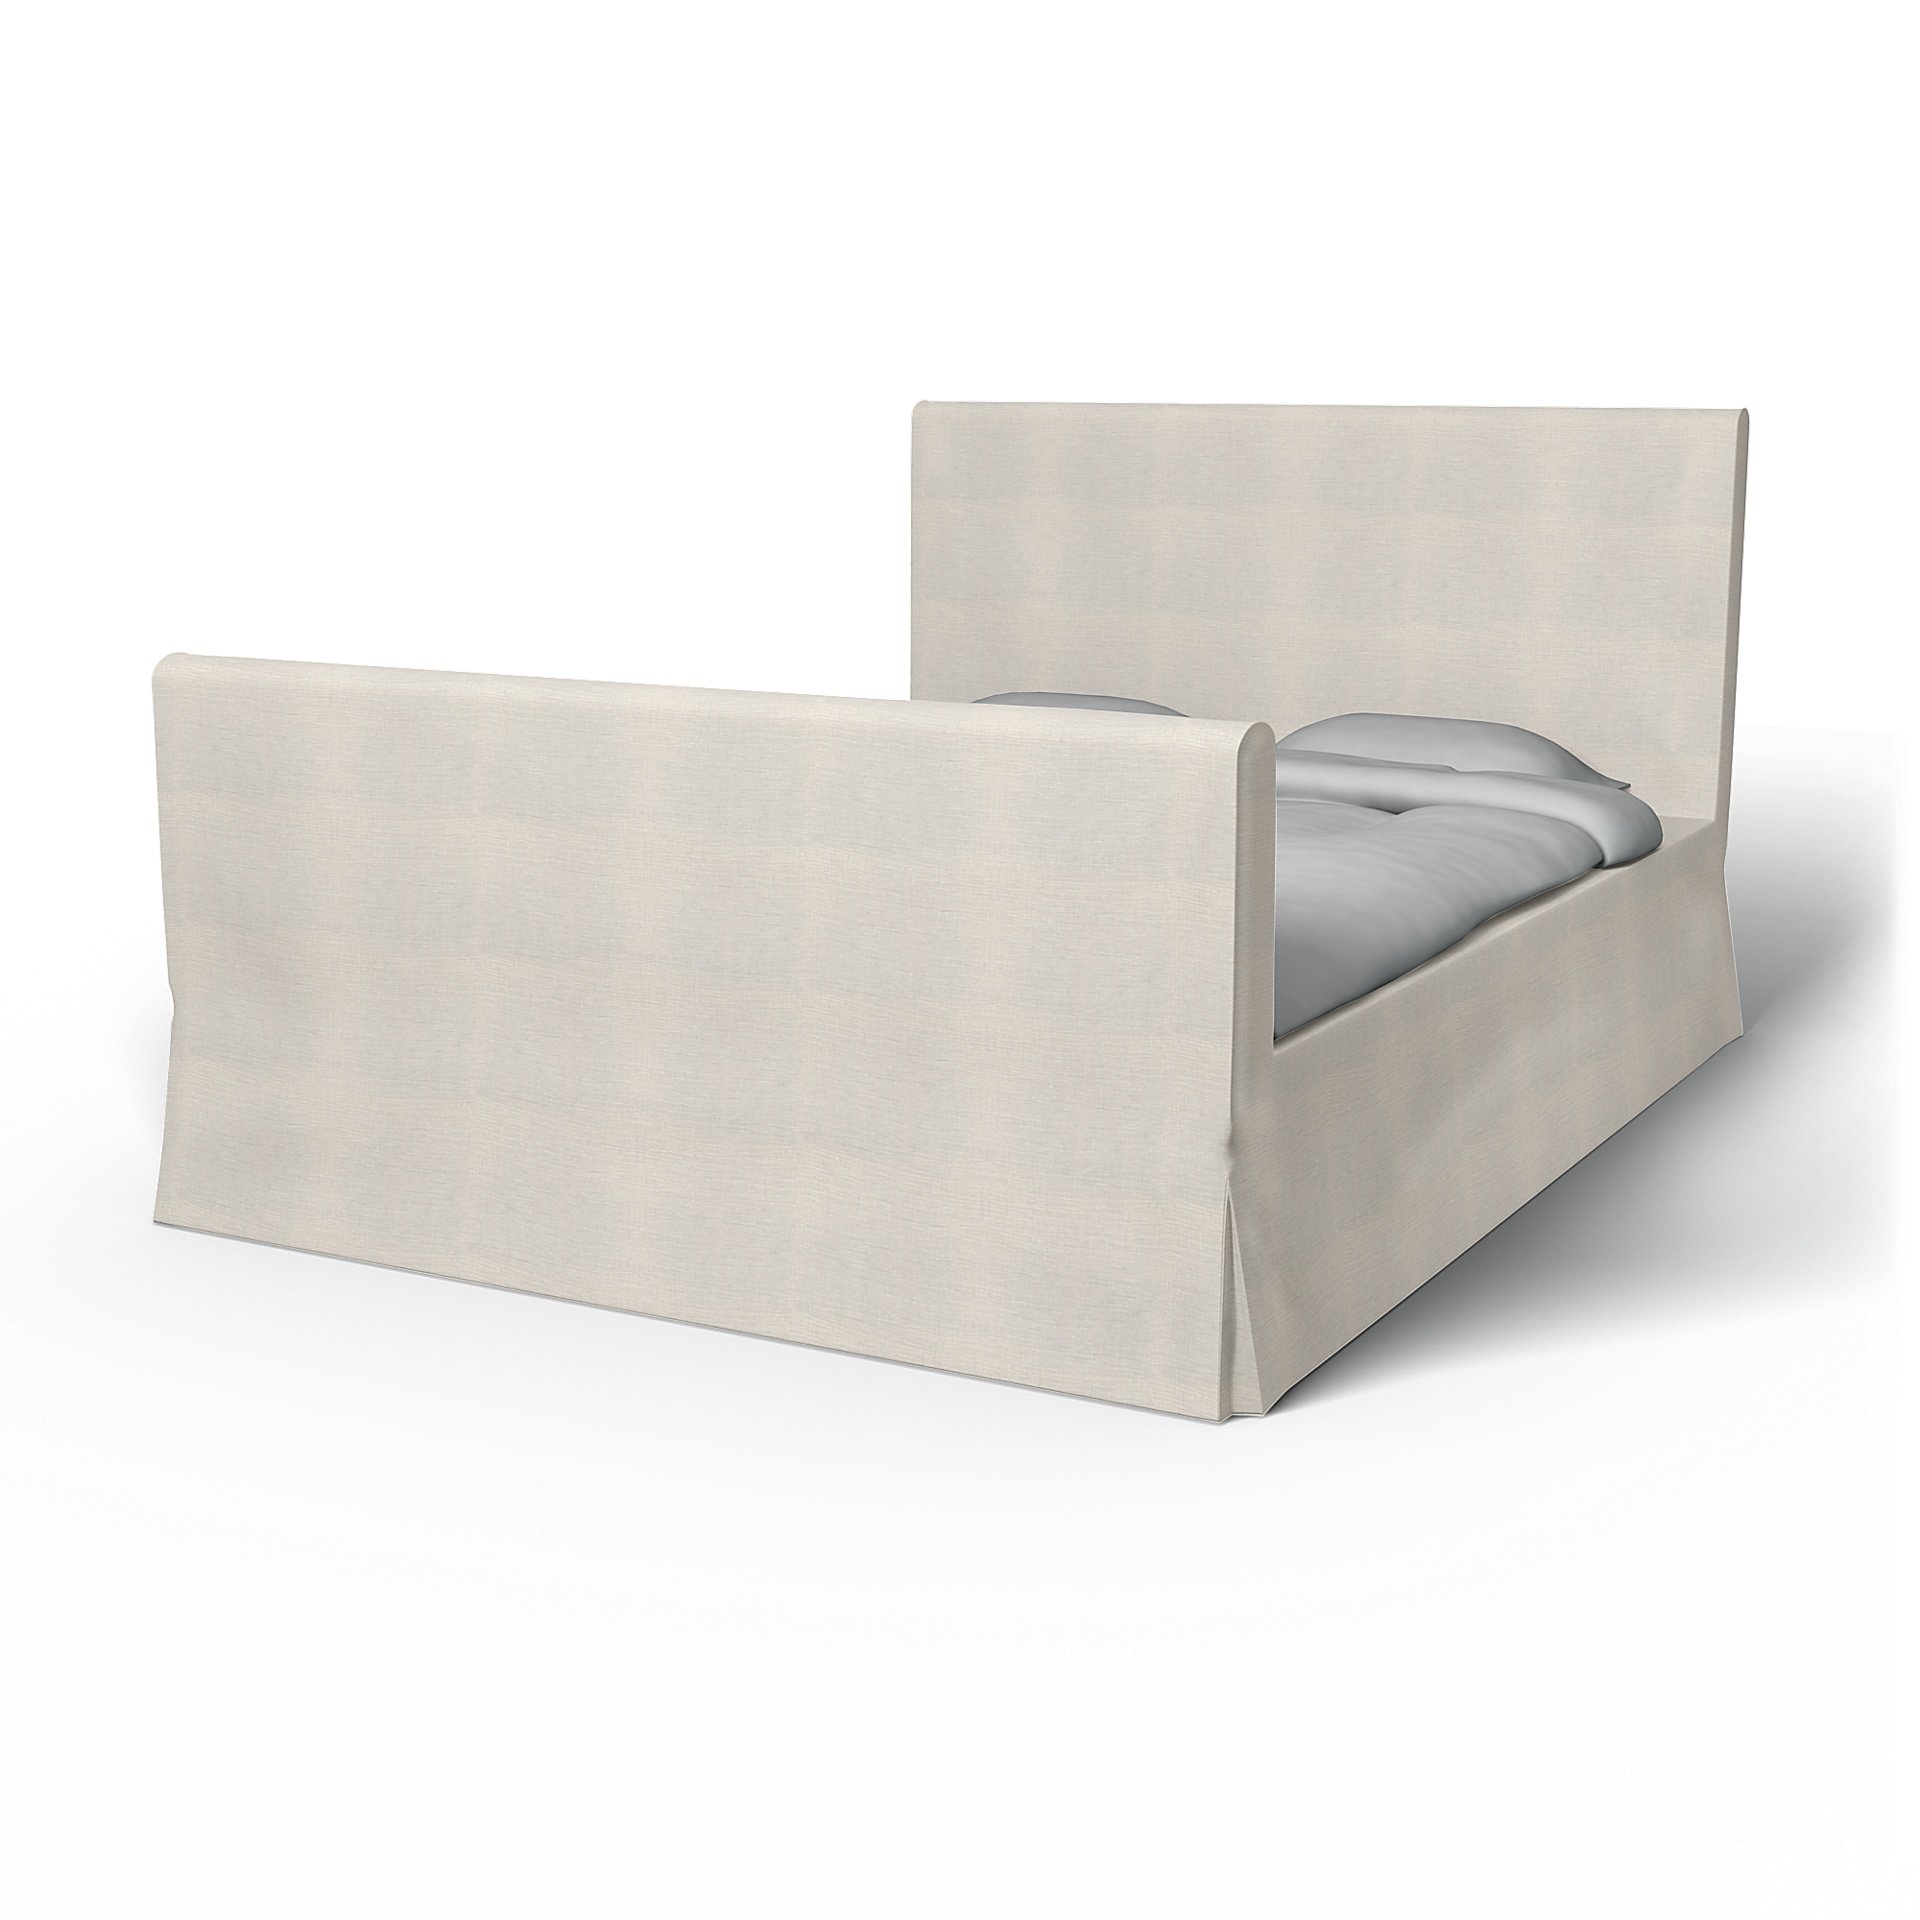 IKEA - Floro Bed Frame Cover, Soft White, Linen - Bemz